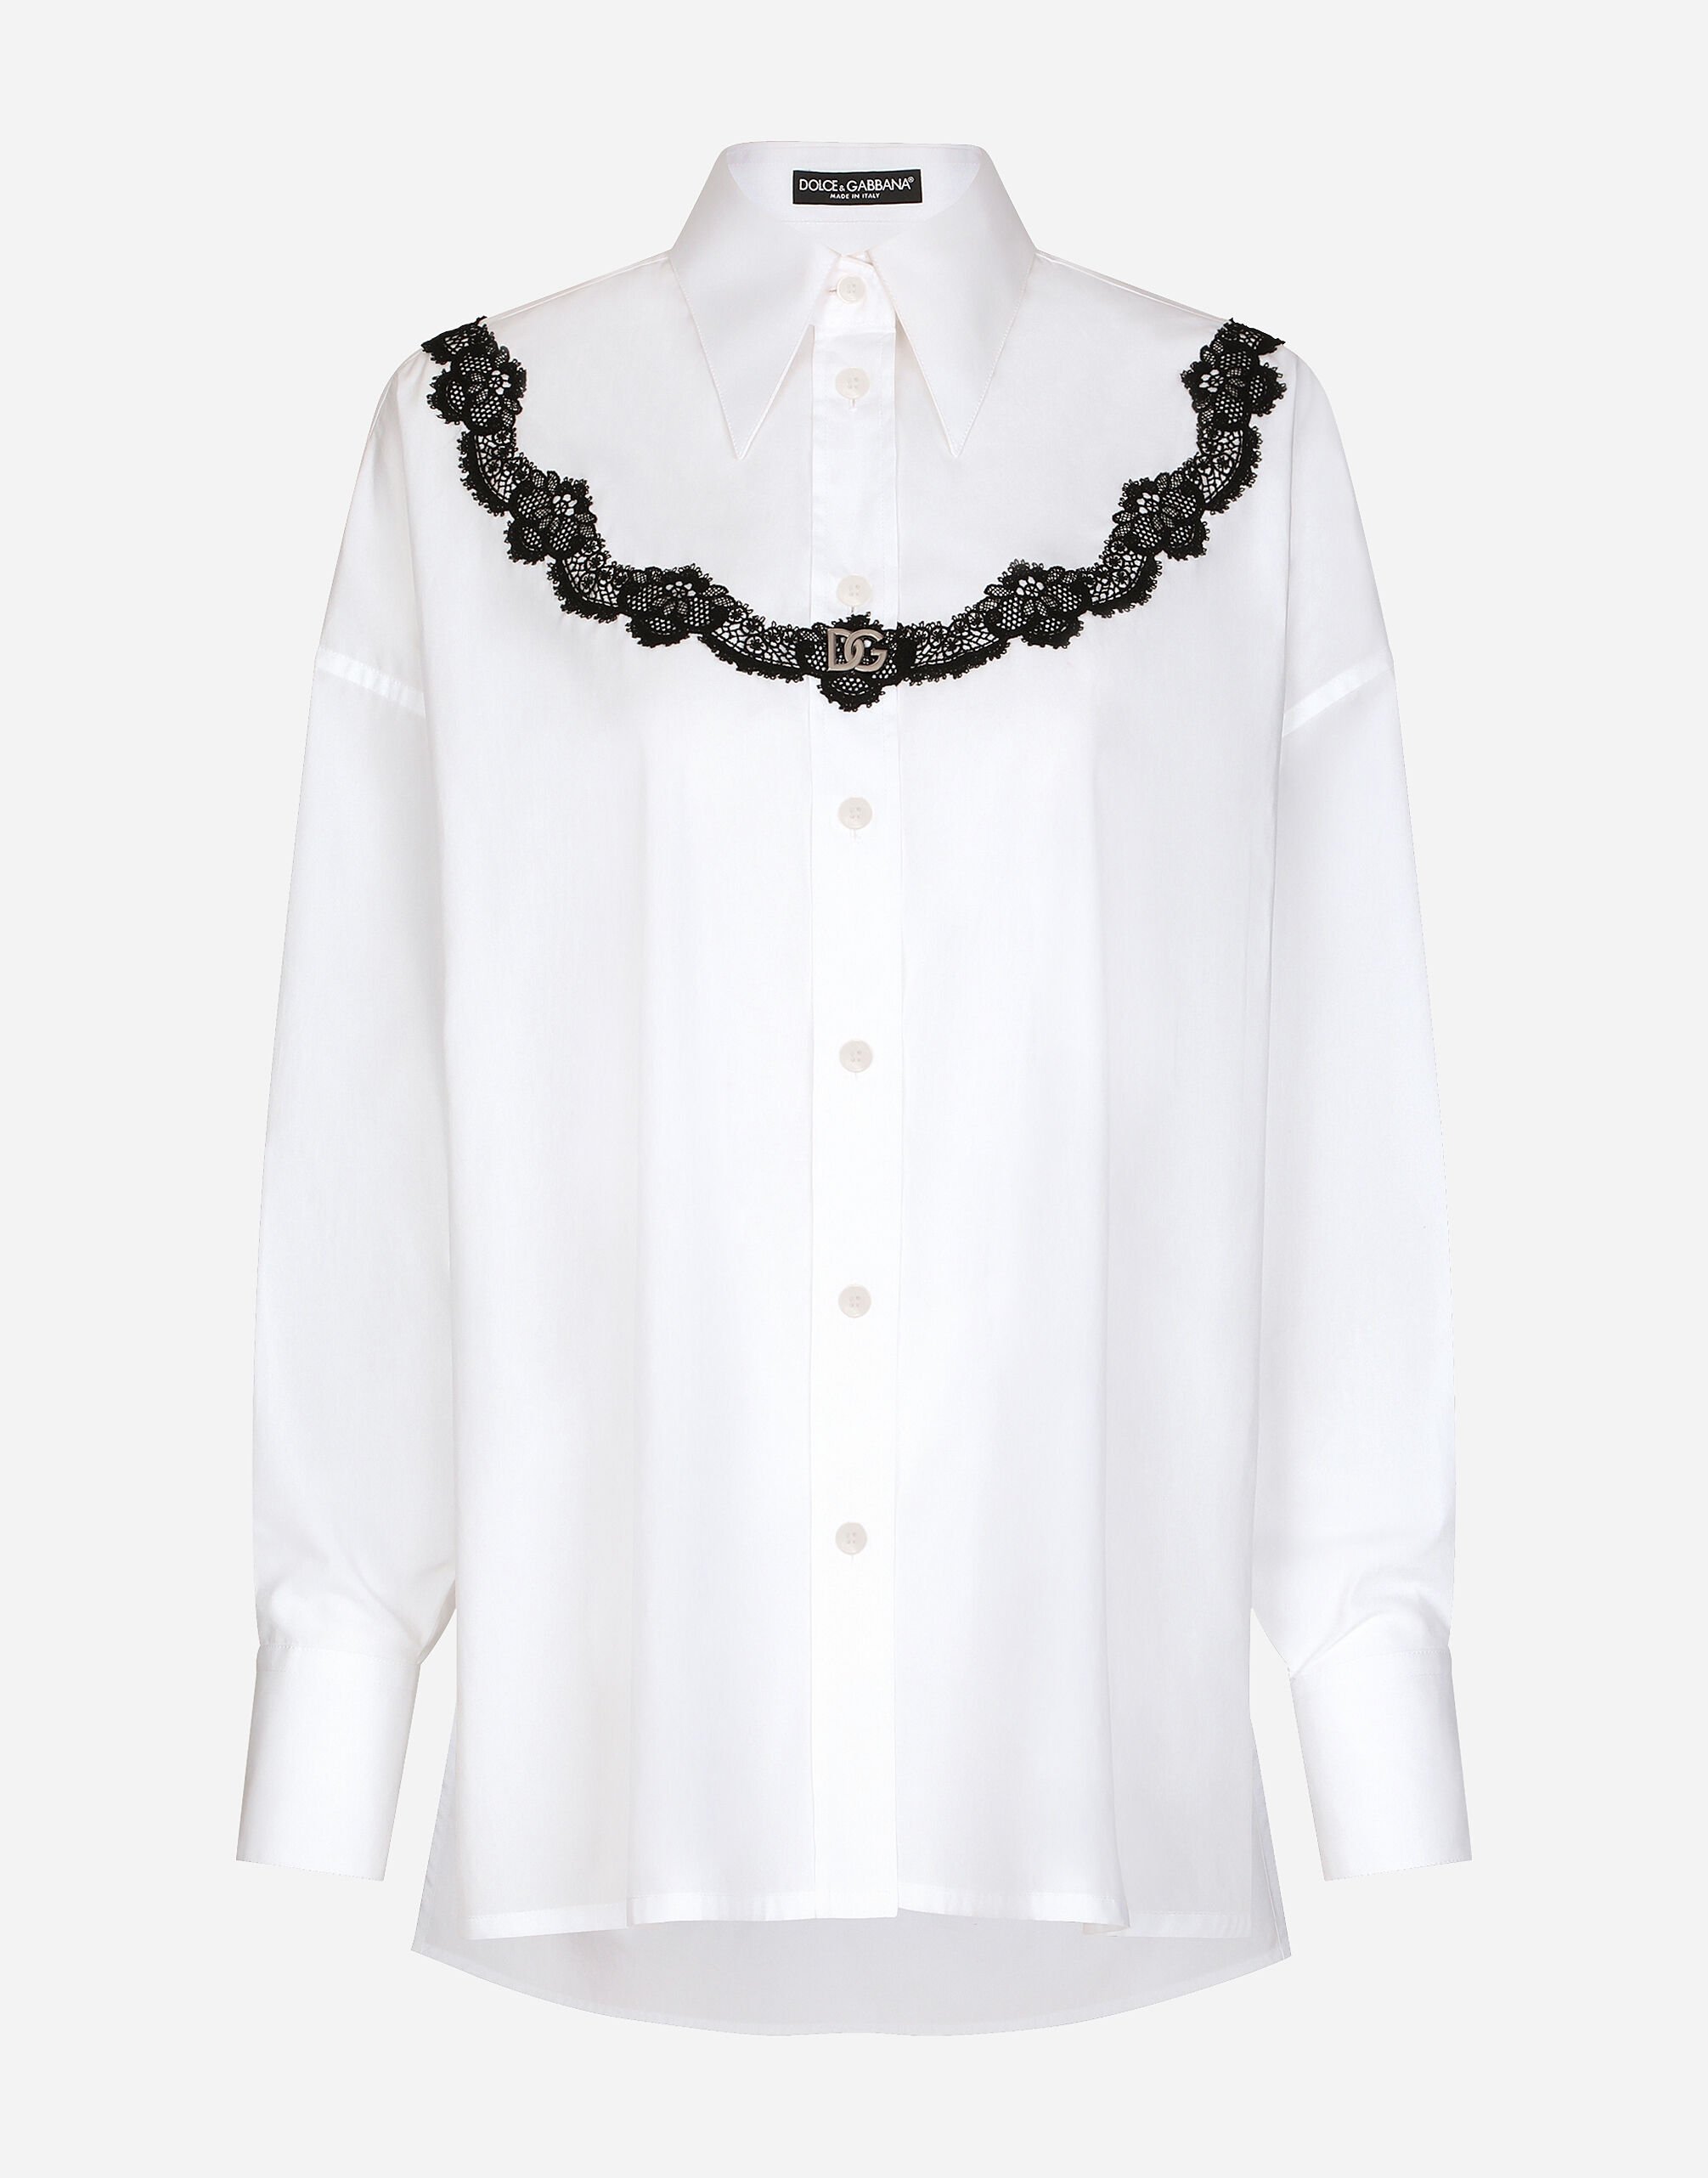 Dolce & Gabbana 레이스 인서트 오버사이즈 포플린 셔츠 화이트 F5Q62TFU5T9